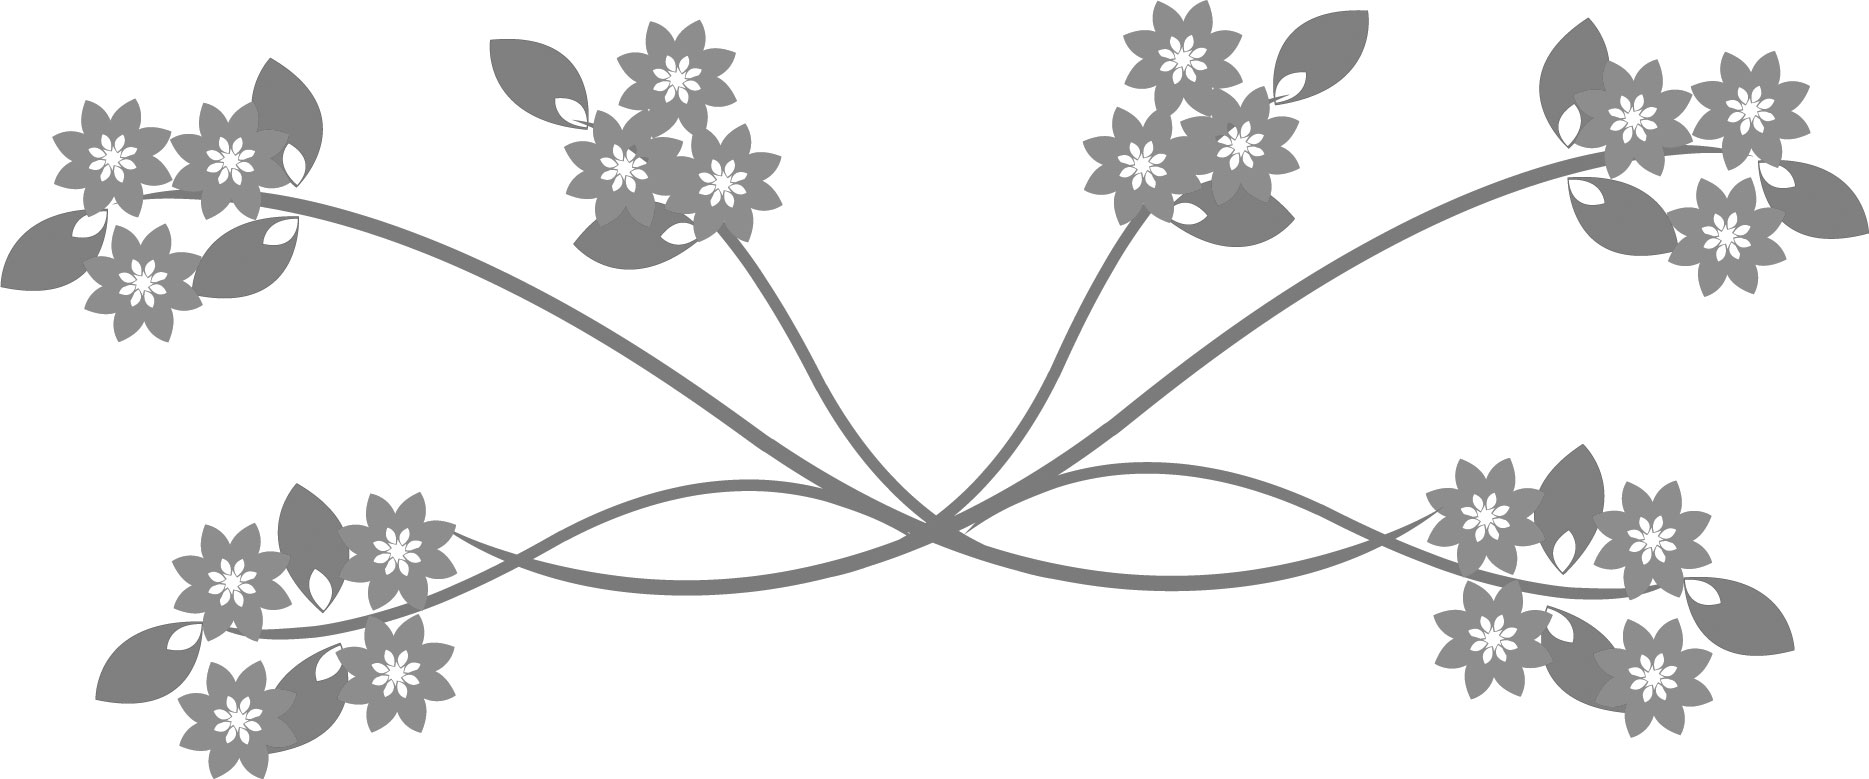 花のイラスト フリー素材 白黒 モノクロno 513 白黒 茎葉 3本